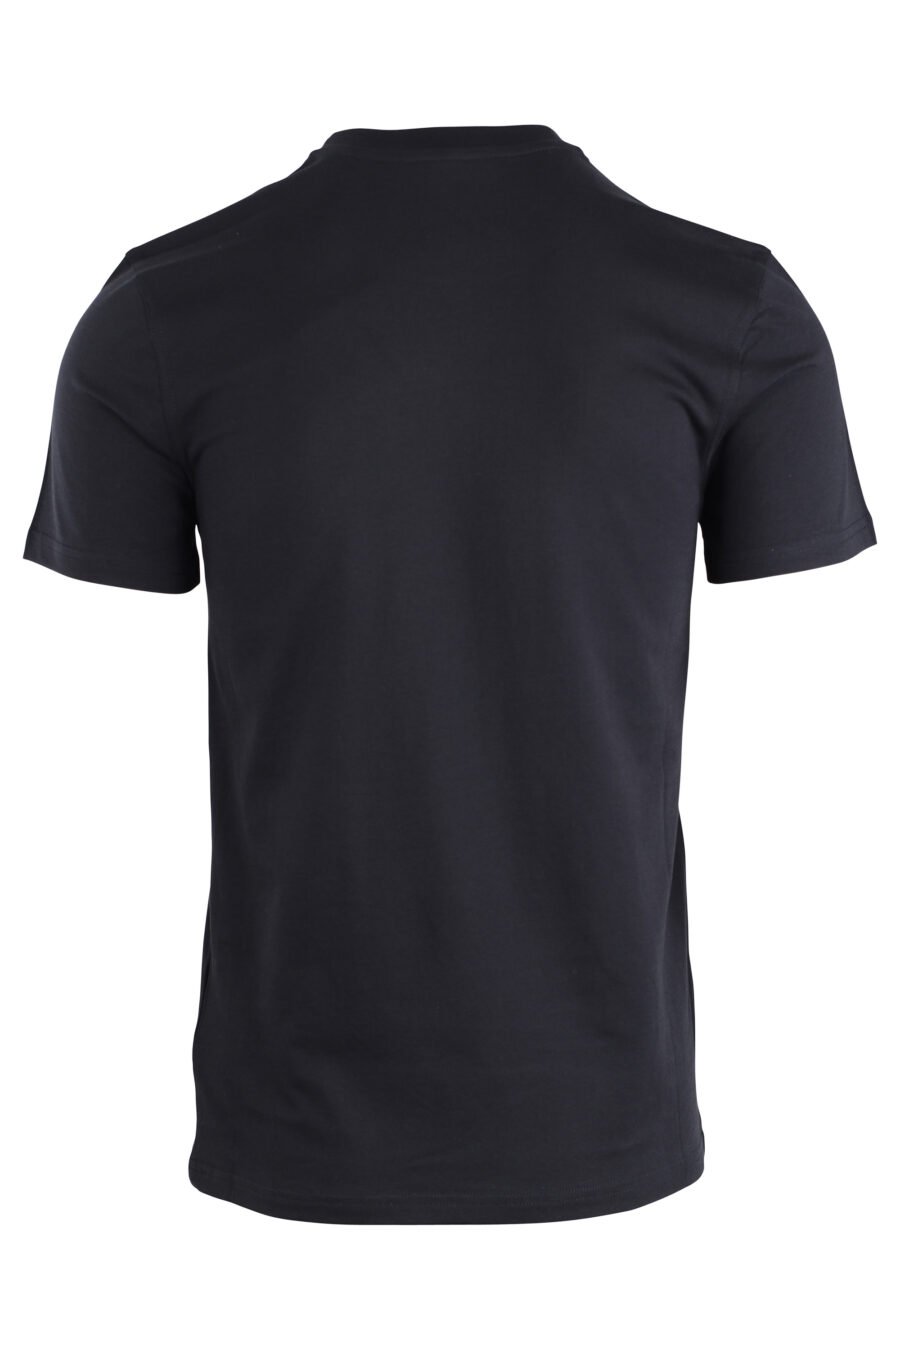 Schwarzes T-Shirt mit einfarbigem Bären-Minilogo - IMG 1671